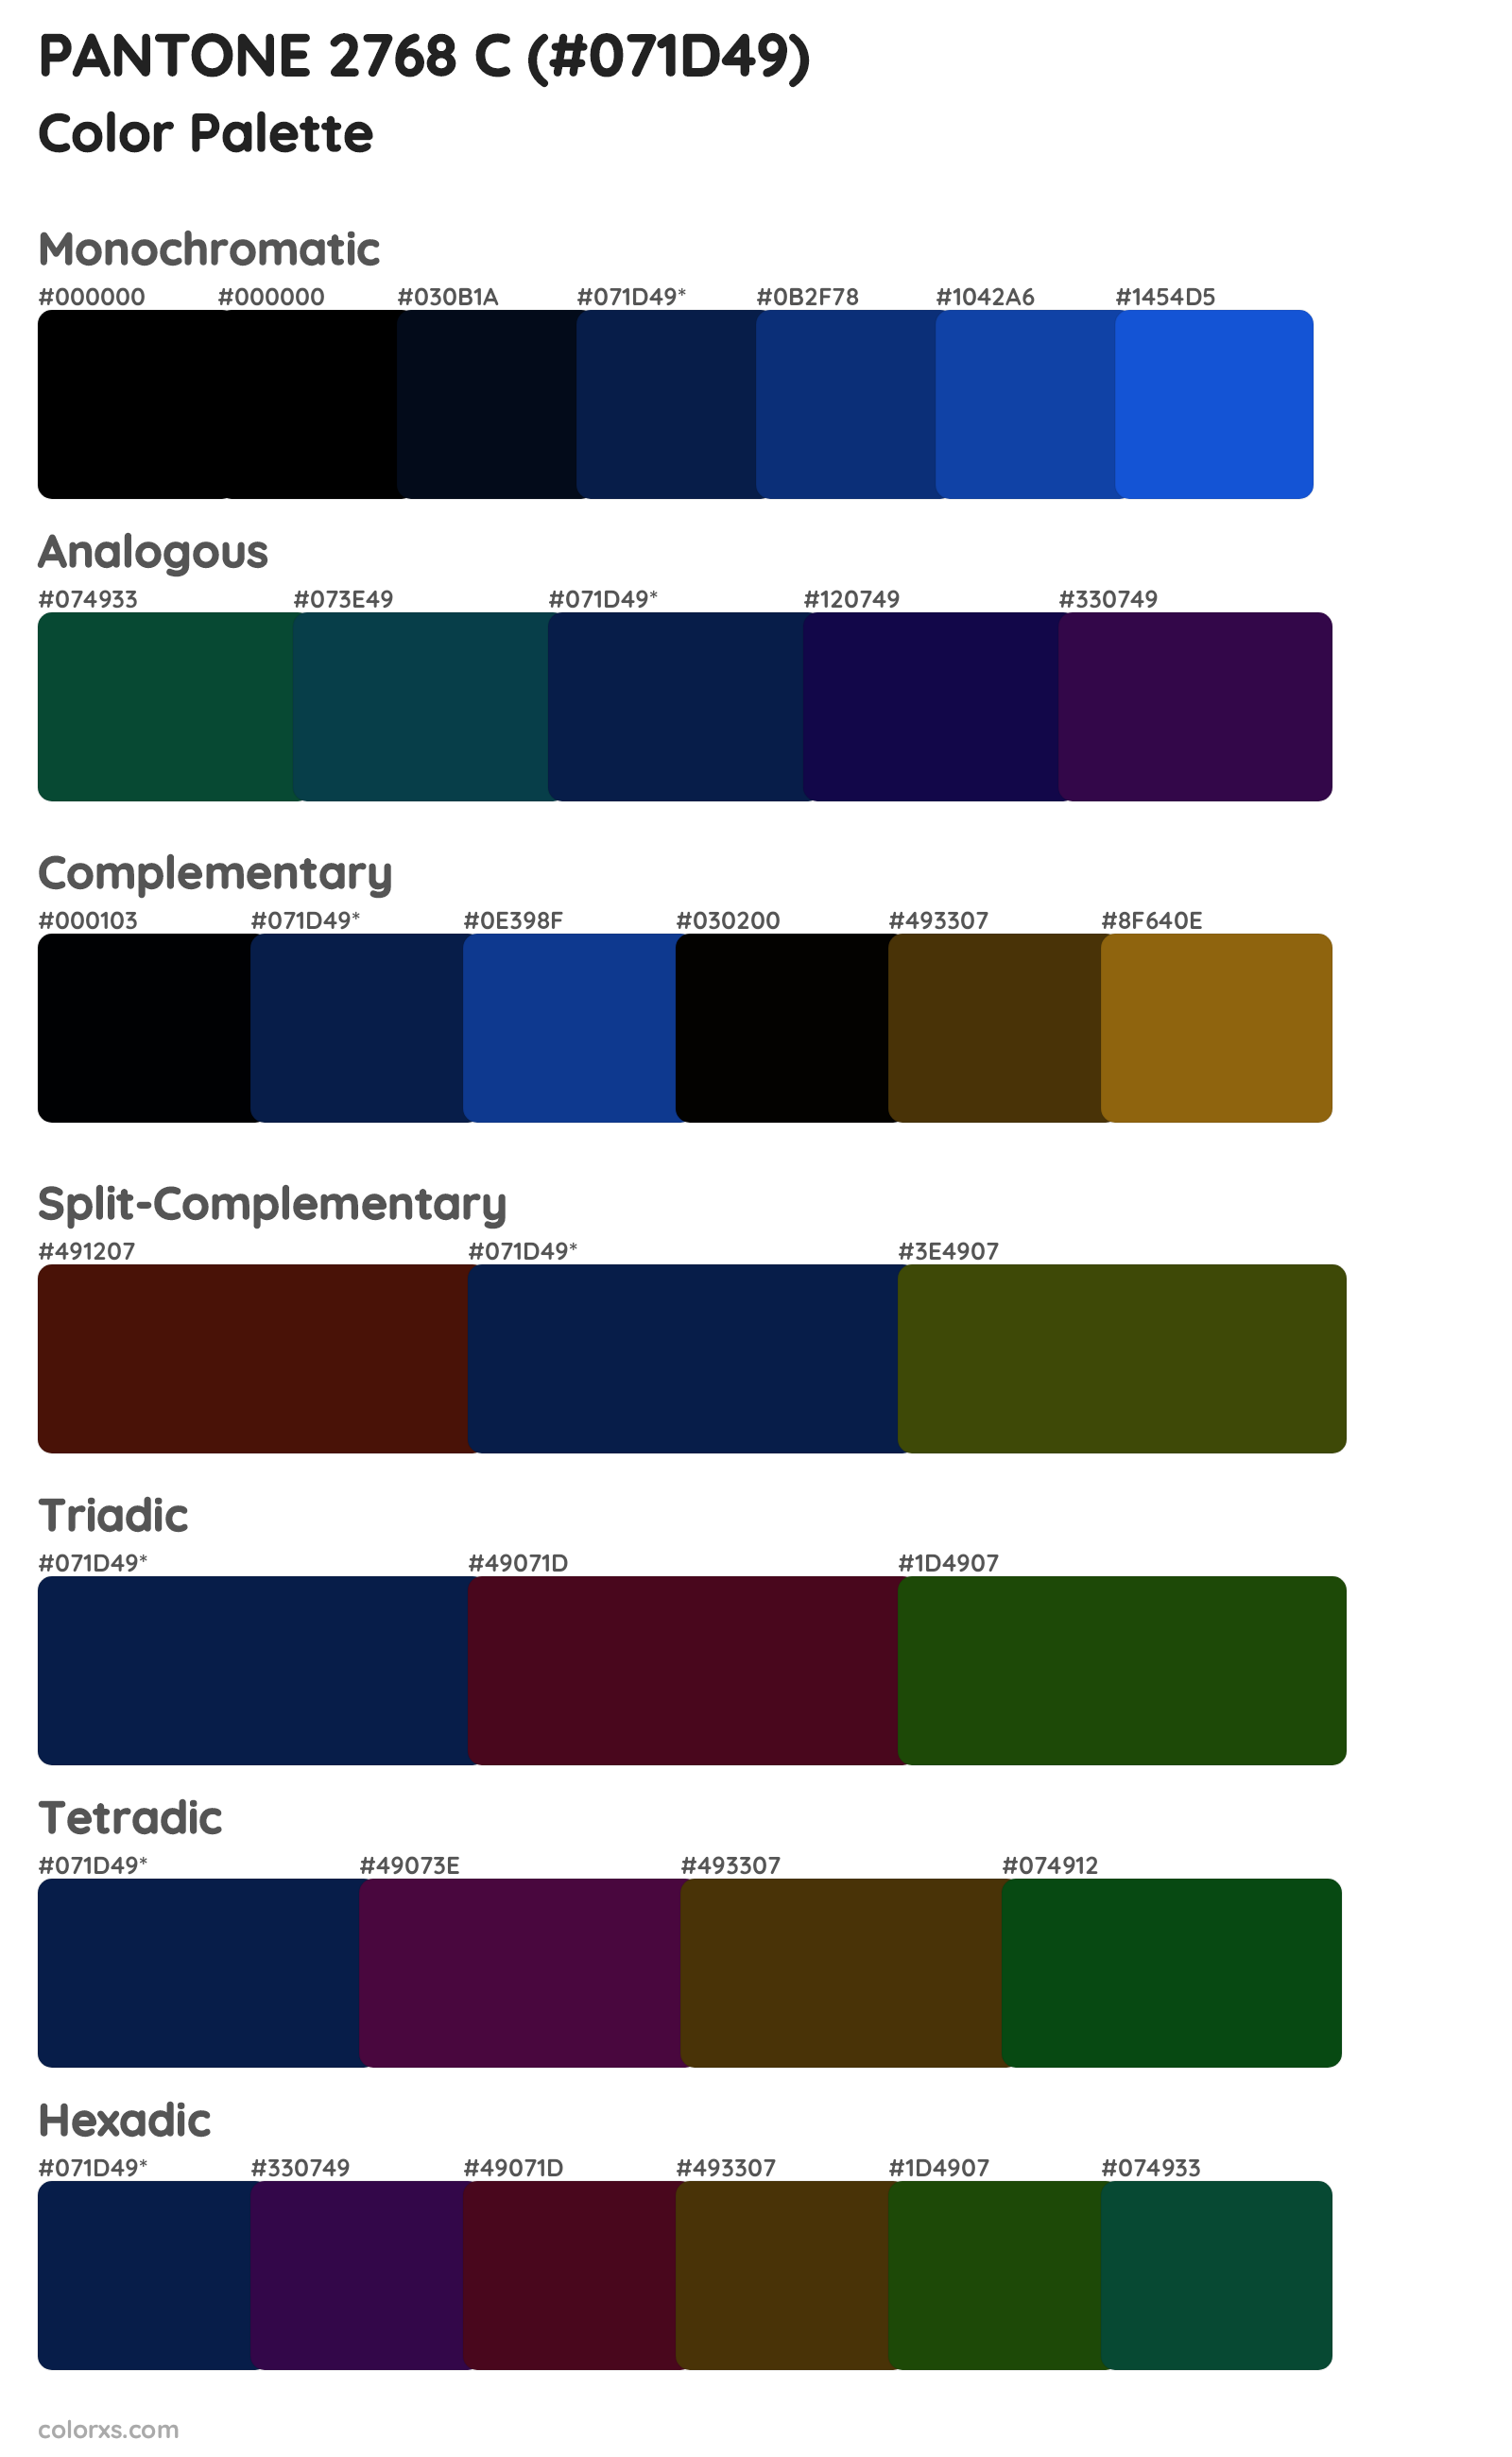 PANTONE 2768 C Color Scheme Palettes